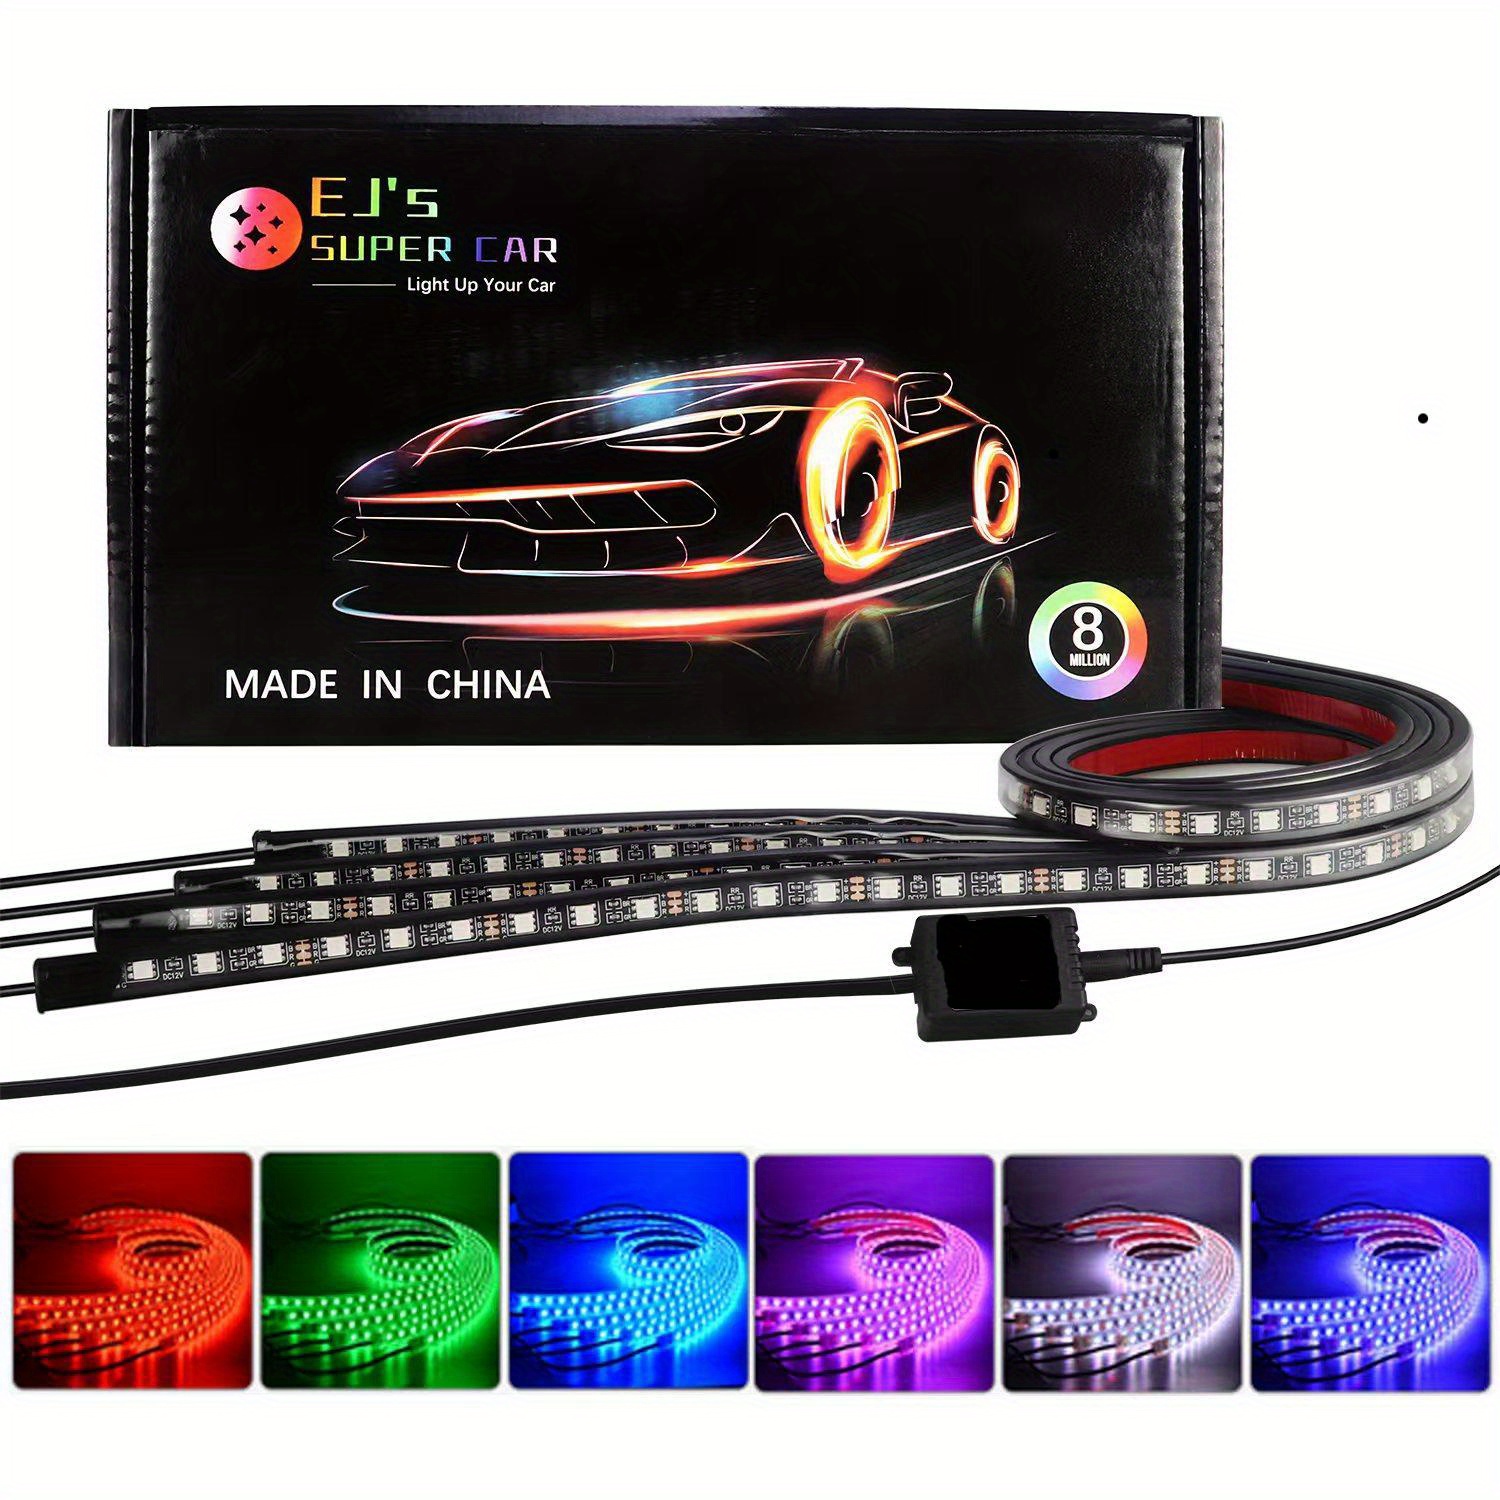 Tira de luces LED RGB impermeables para coche, kit de iluminación exterior  multicolor para debajo de la carrocería con función activa de sonido y